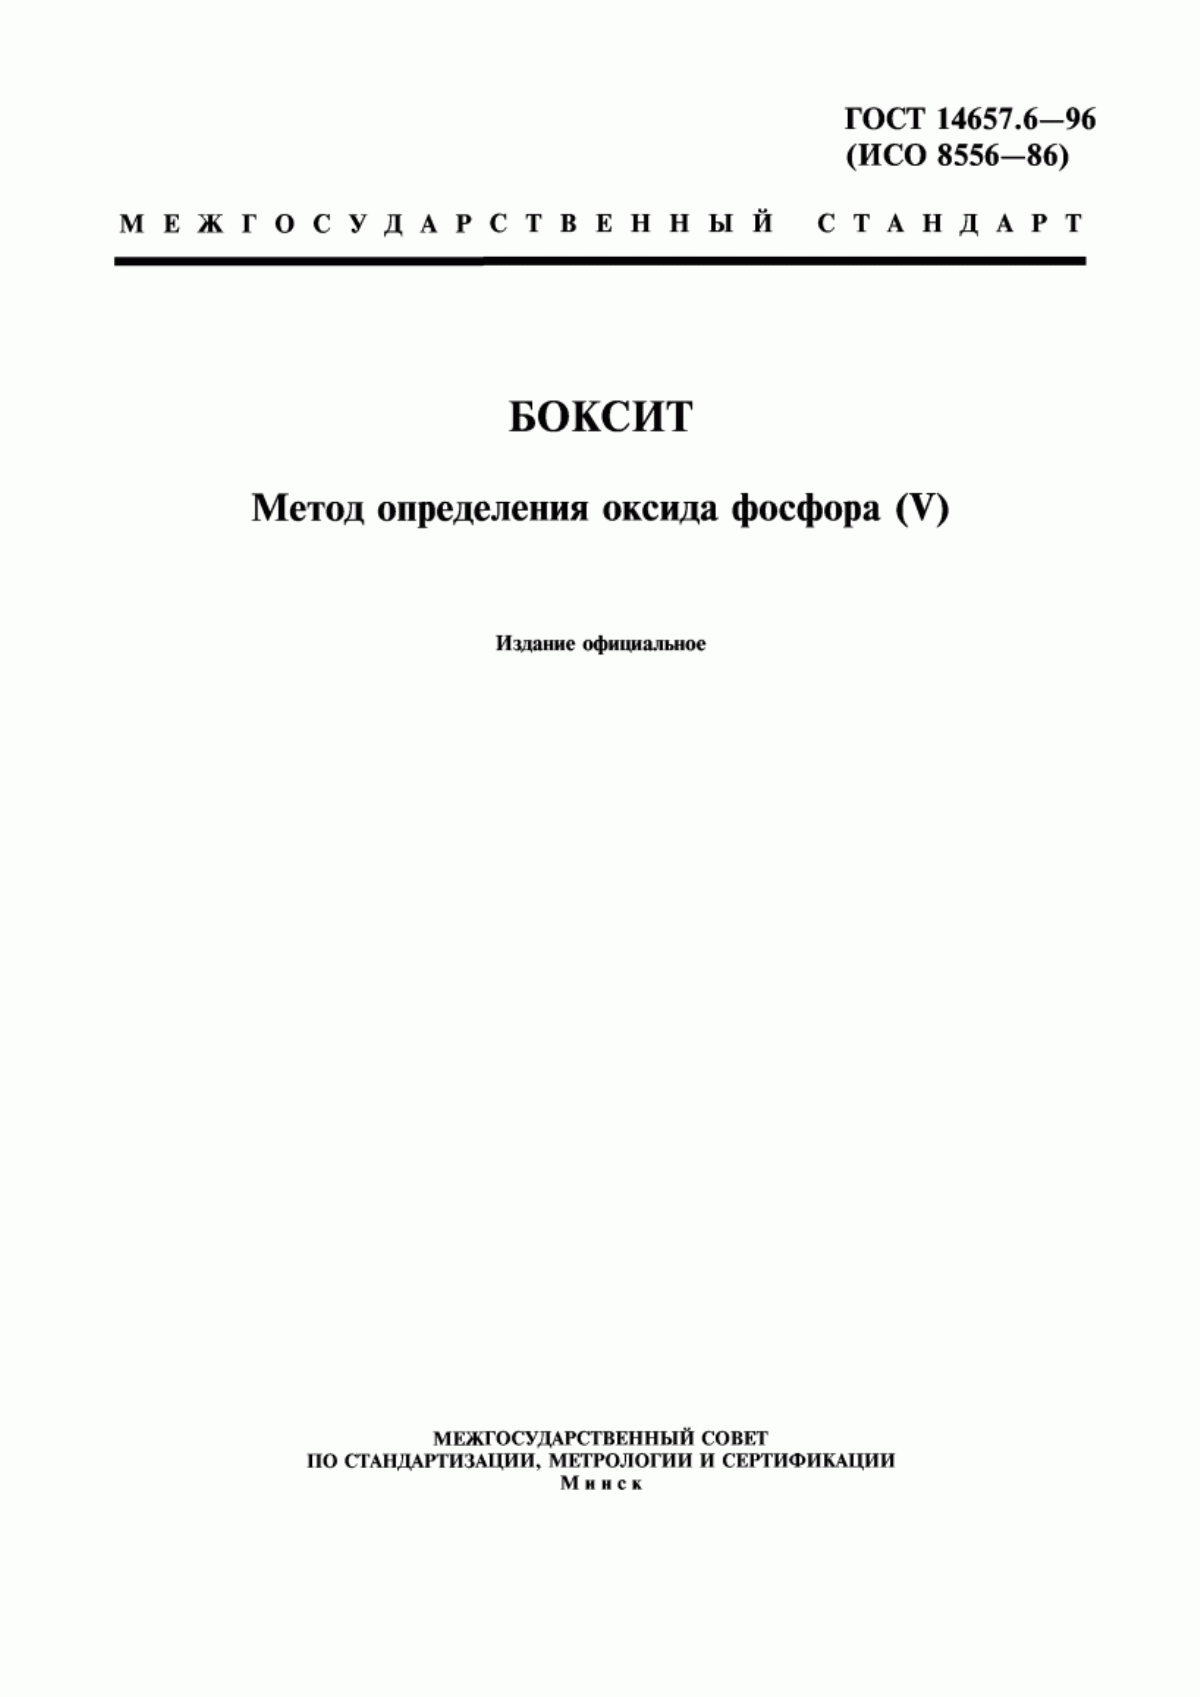 ГОСТ 14657.6-96 Боксит. Метод определения оксида фосфора (V)